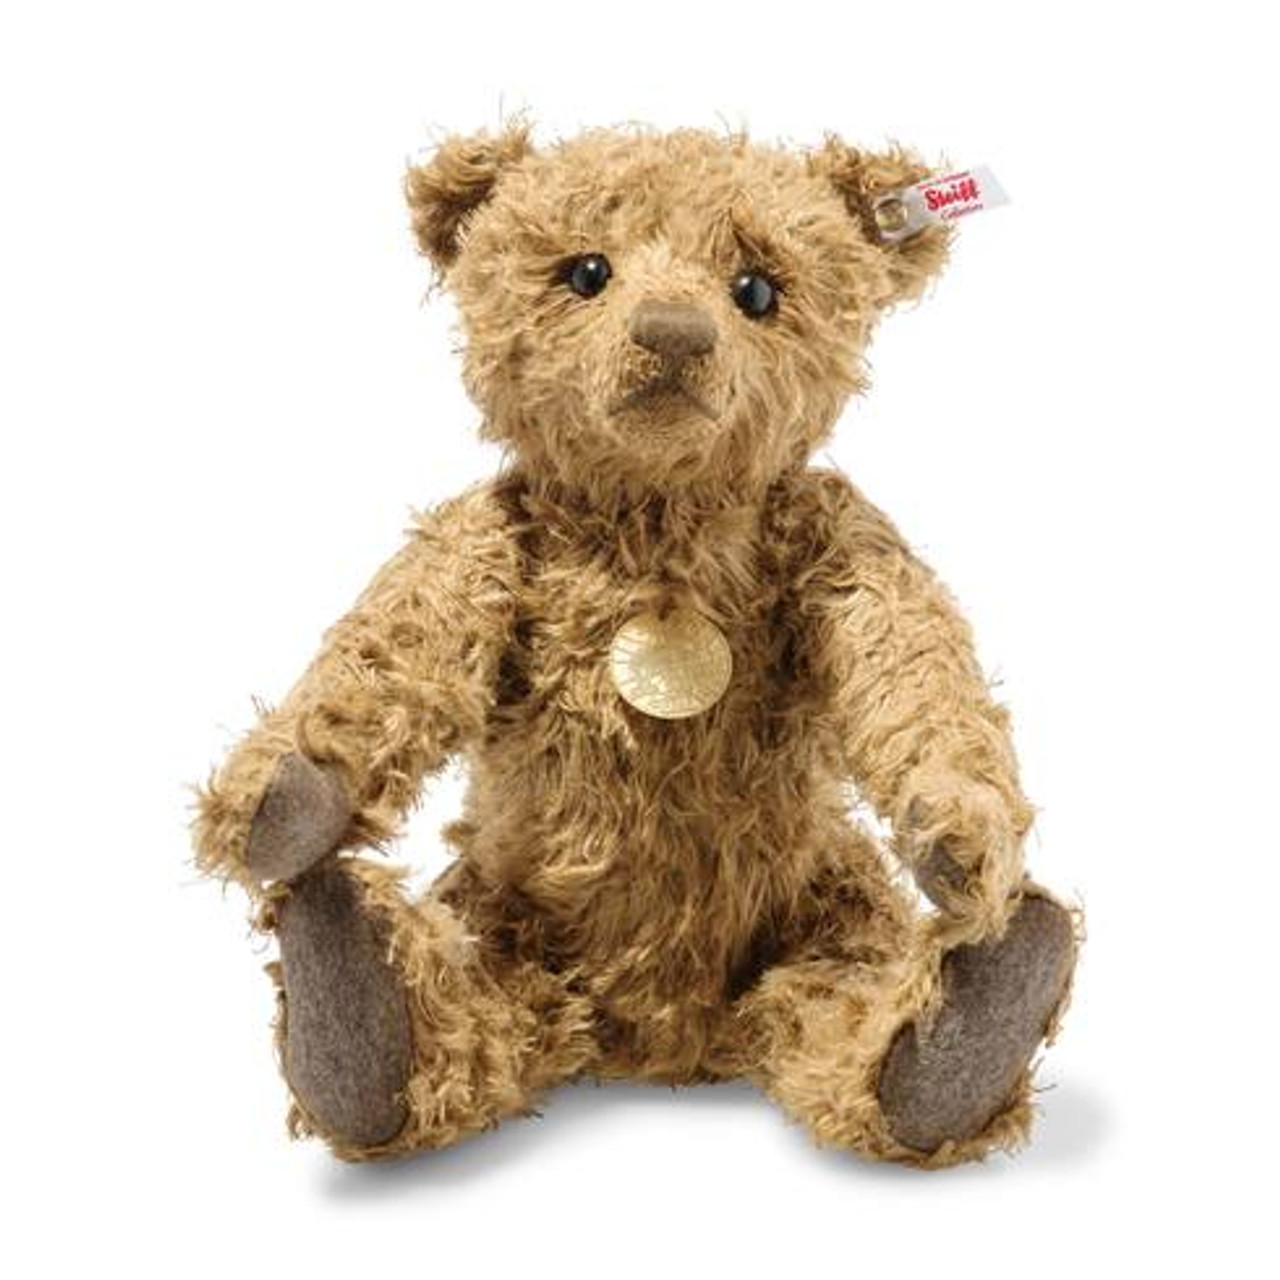 Steiff Hansel Teddy Bear "Hemp" Limited Edition EAN 006968